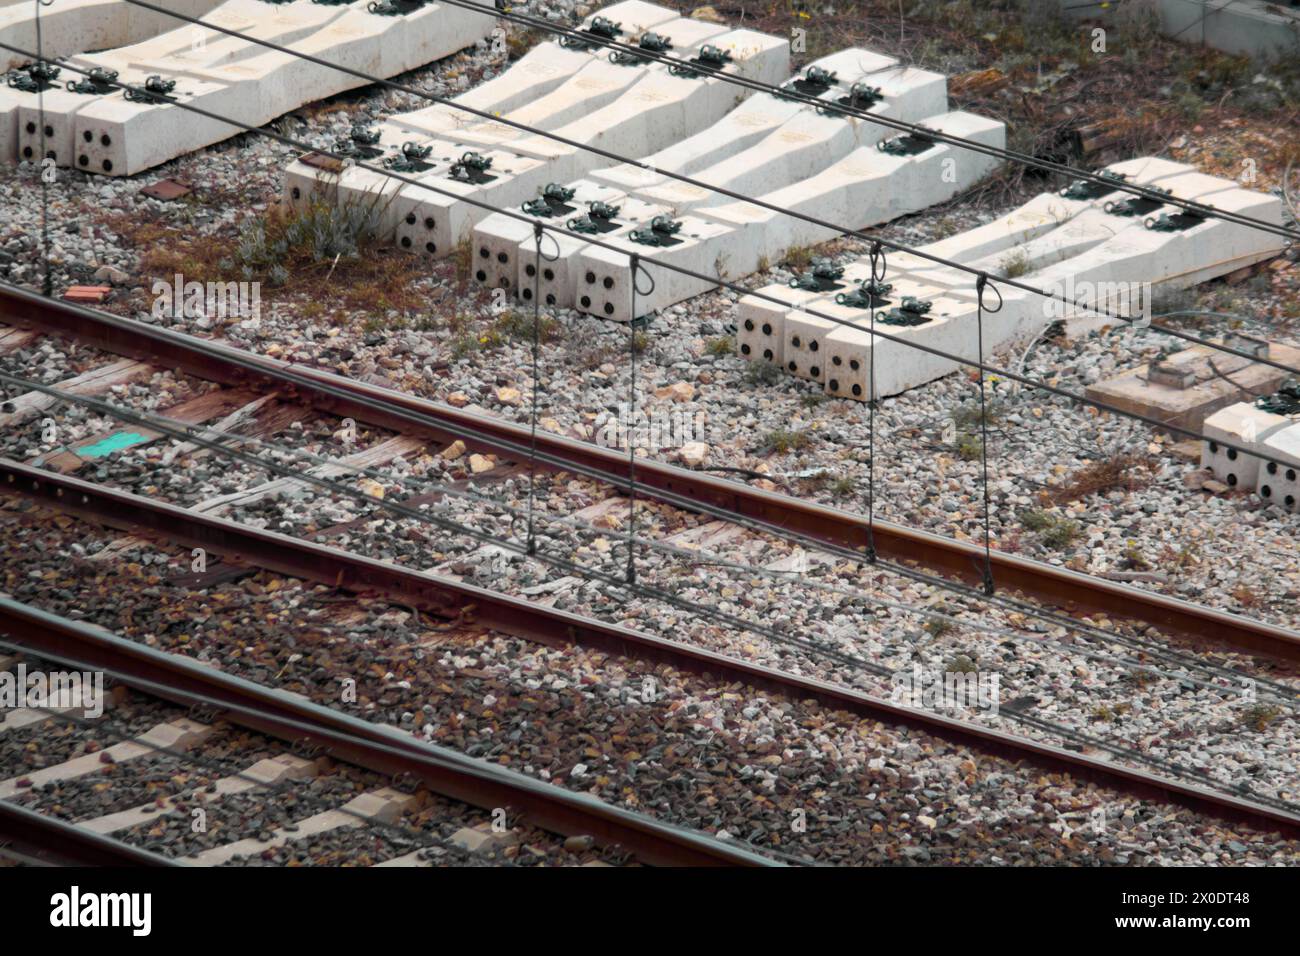 Une vue aérienne révèle des traverses de chemin de fer abandonnées et des voies rouillées, peignant une image d'infrastructures oubliées lentement récupérées par la nature Banque D'Images